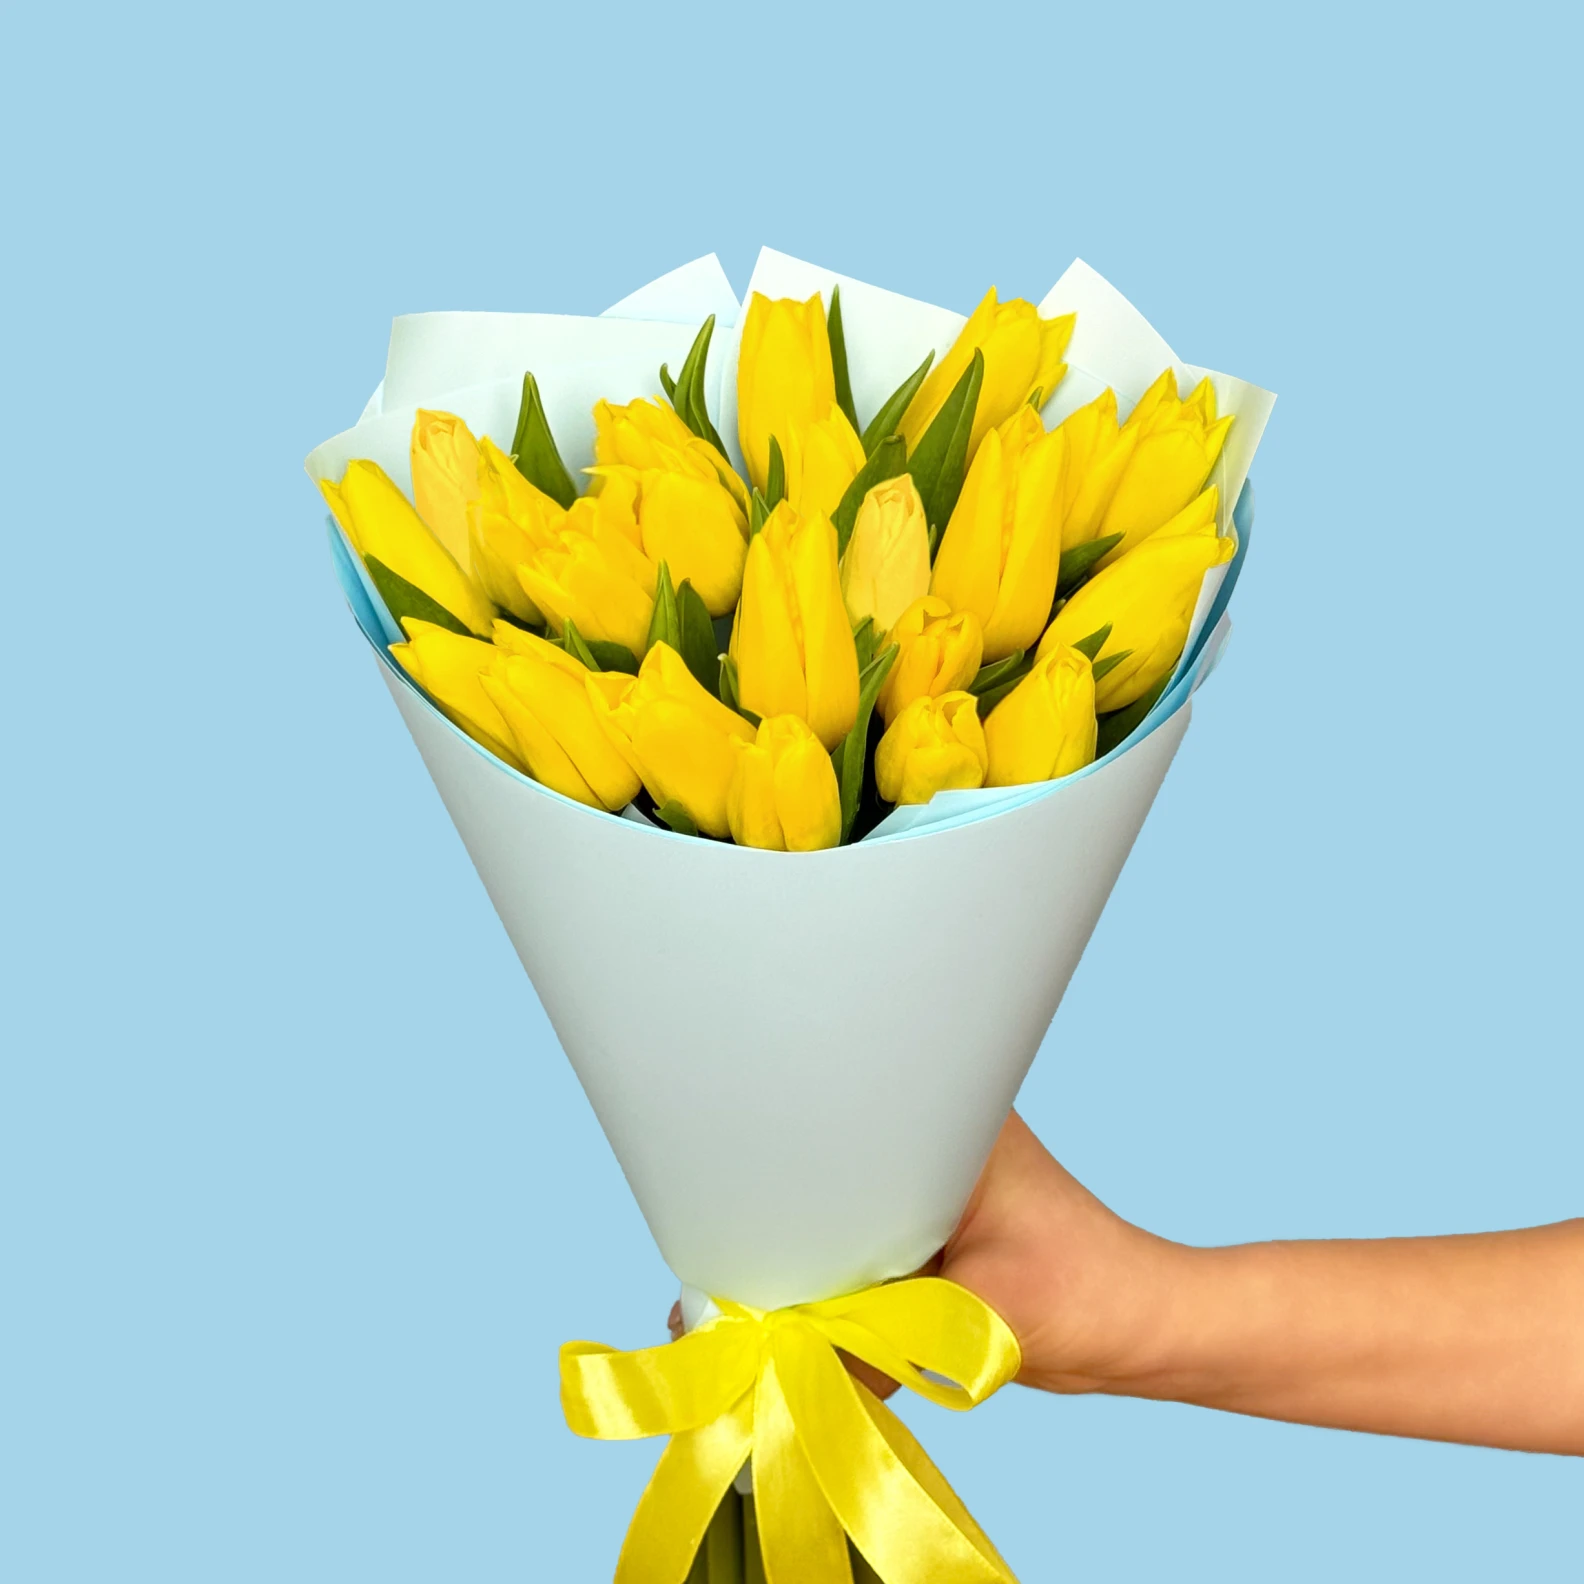 20 Yellow Tulips - image №2